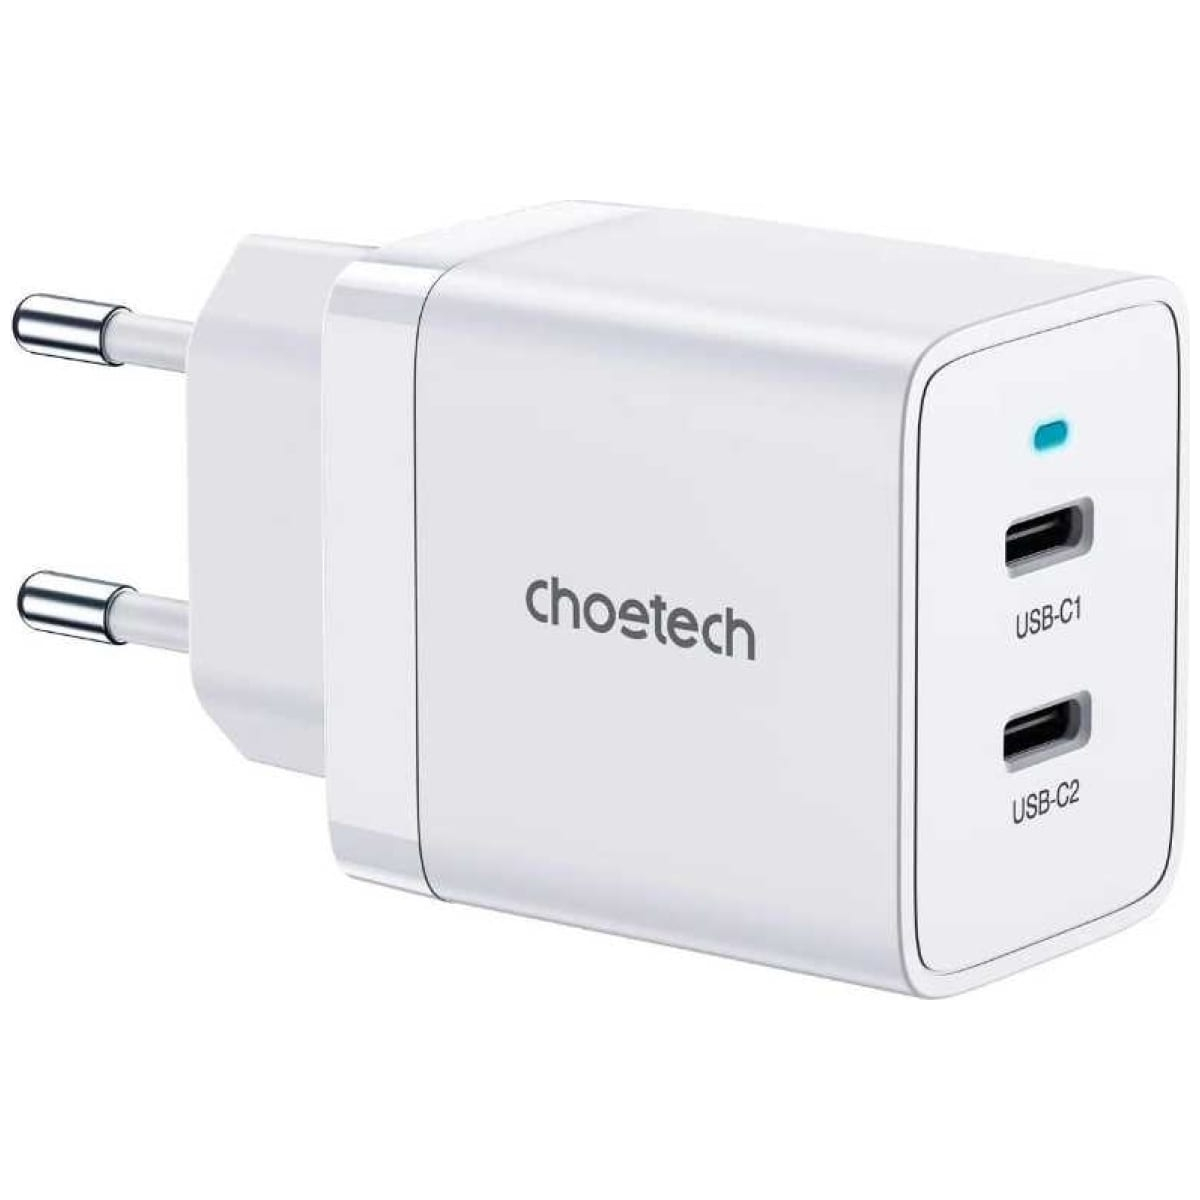 Сетевое зарядное устройство Choetech 40Вт (2xUSB-C) PD/PPS, цвет белый (Q5006) сетевое зарядное устройство choetech gan 100вт 2хusb с 1хusb a pd цвет черный